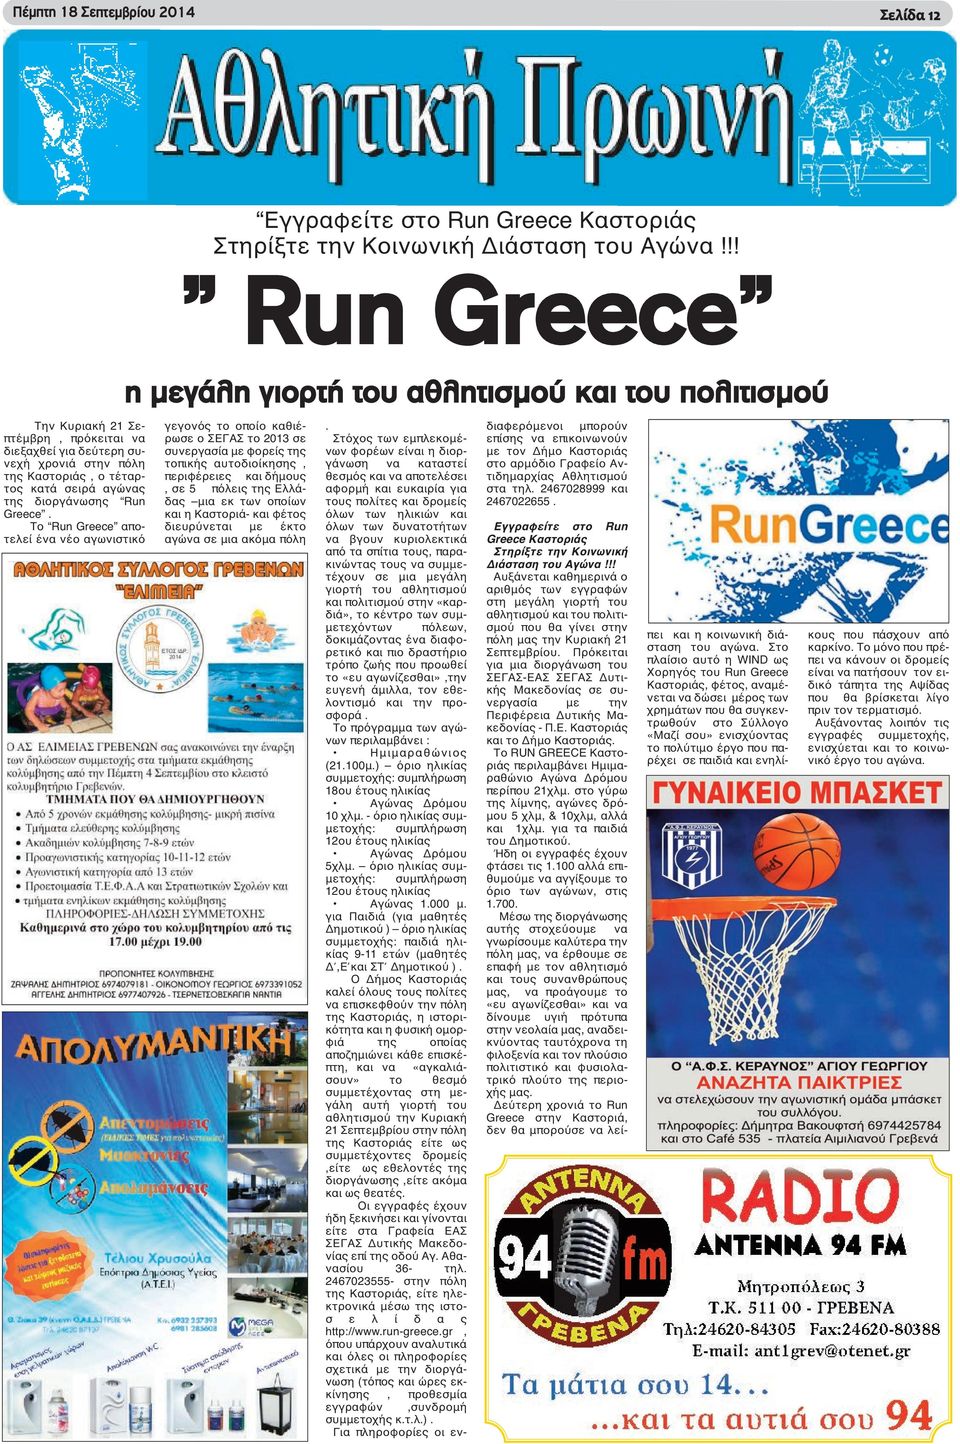 Το Run Greece αποτελεί ένα νέο αγωνιστικό η μεγάλη γιορτή του αθλητισμού και του πολιτισμού γεγονός το οποίο καθιέρωσε ο ΣΕΓΑΣ το 2013 σε συνεργασία με φορείς της τοπικής αυτοδιοίκησης, περιφέρειες